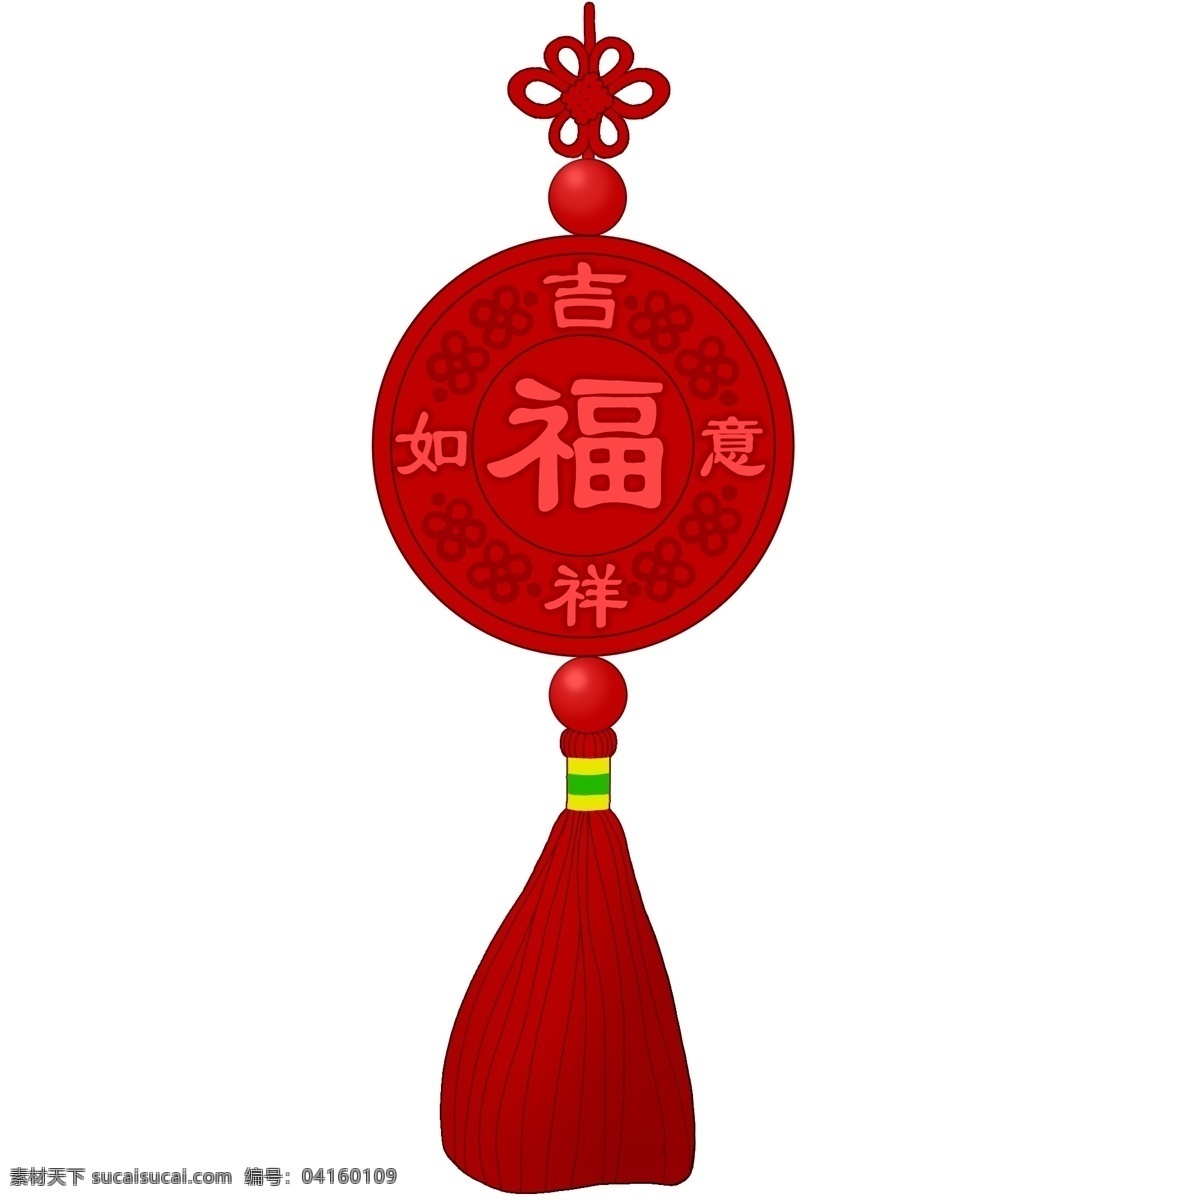 吉祥如意 中国结 插画 红色的中国结 漂亮的中国结 喜庆中国结 手绘中国结 中国结挂饰